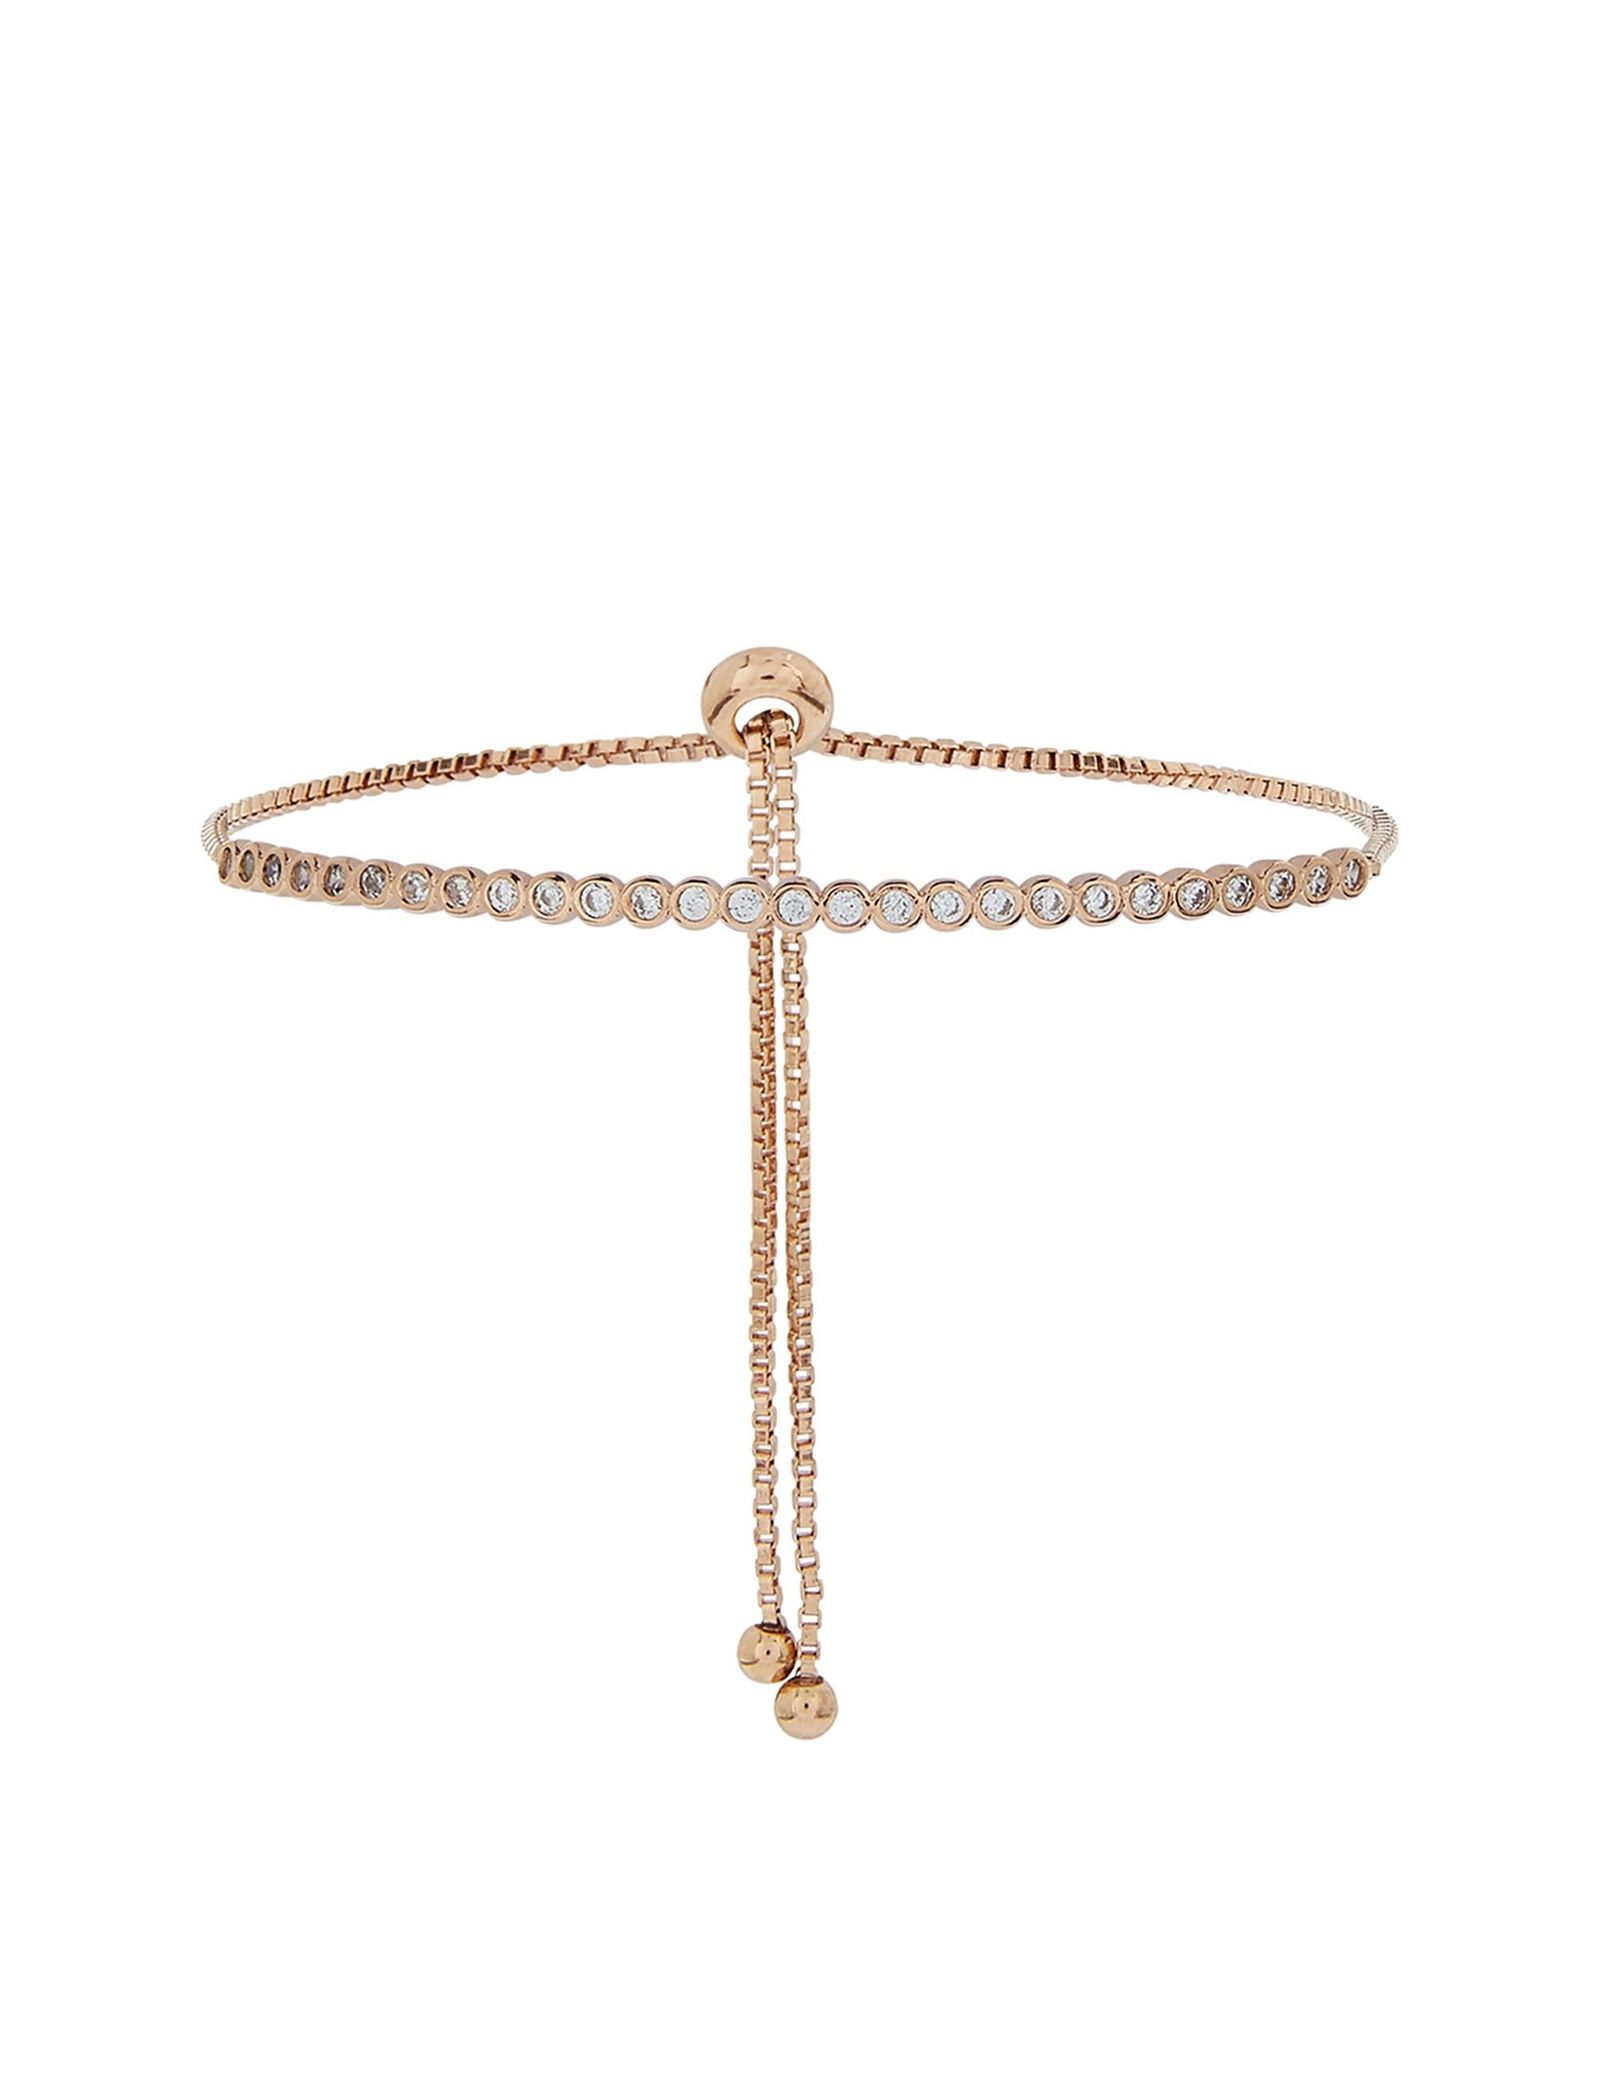 دستبند زنجیری زنانه Delicate Sparkle Bar - اکسسورایز تک سایز - رزگلد - 1